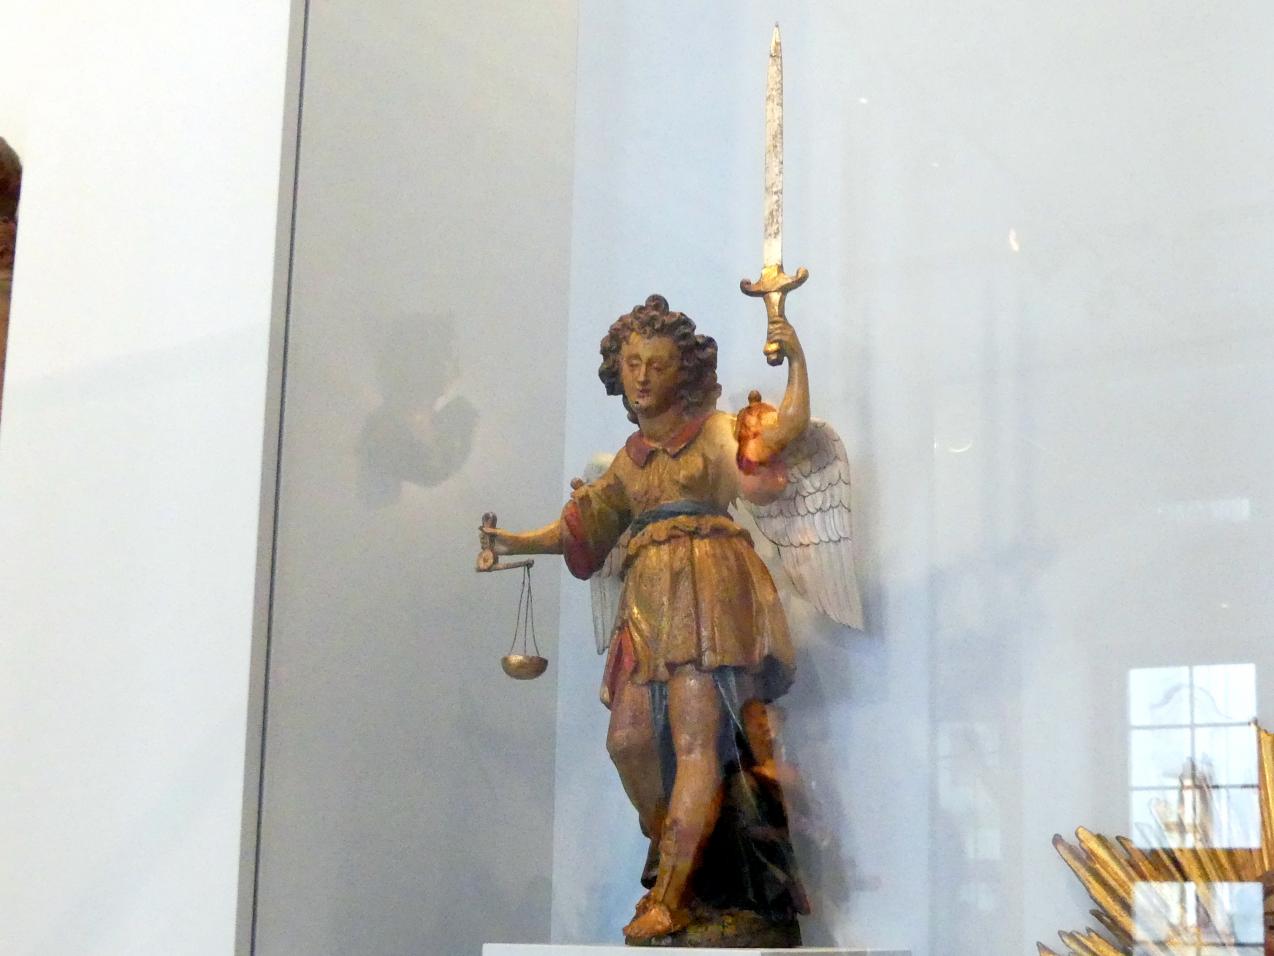 Heiliger Michael, Augsburg, Maximilian Museum, Barockbildhauer in Schwaben und Augsburg, um 1650, Bild 4/5